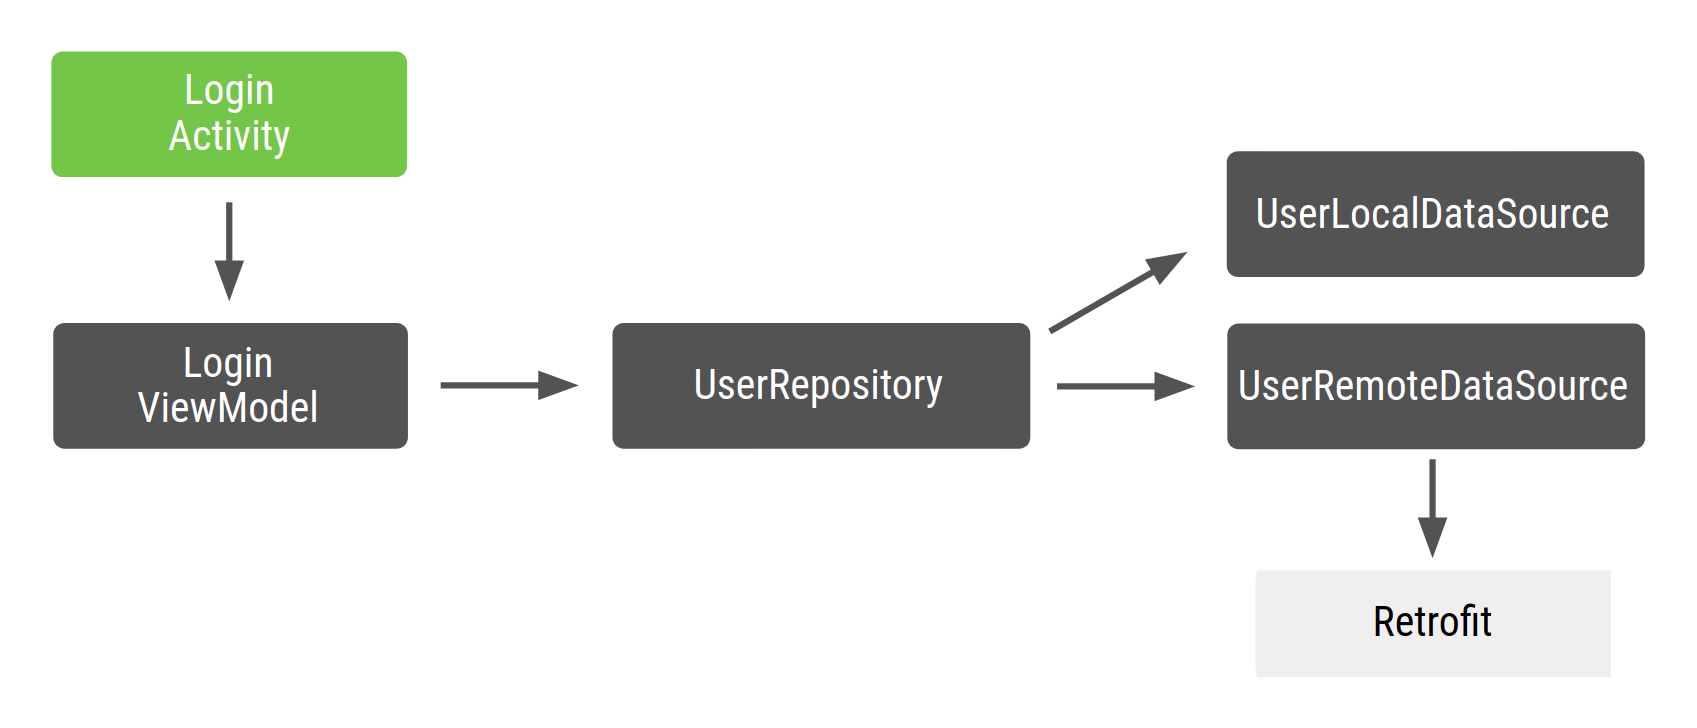 LoginActivity bergantung pada LoginViewModel, yang bergantung pada UserRepository,
  yang bergantung pada UserLocalDataSource dan UserRemoteDataSource, yang pada gilirannya akan
  bergantung pada Retrofit.